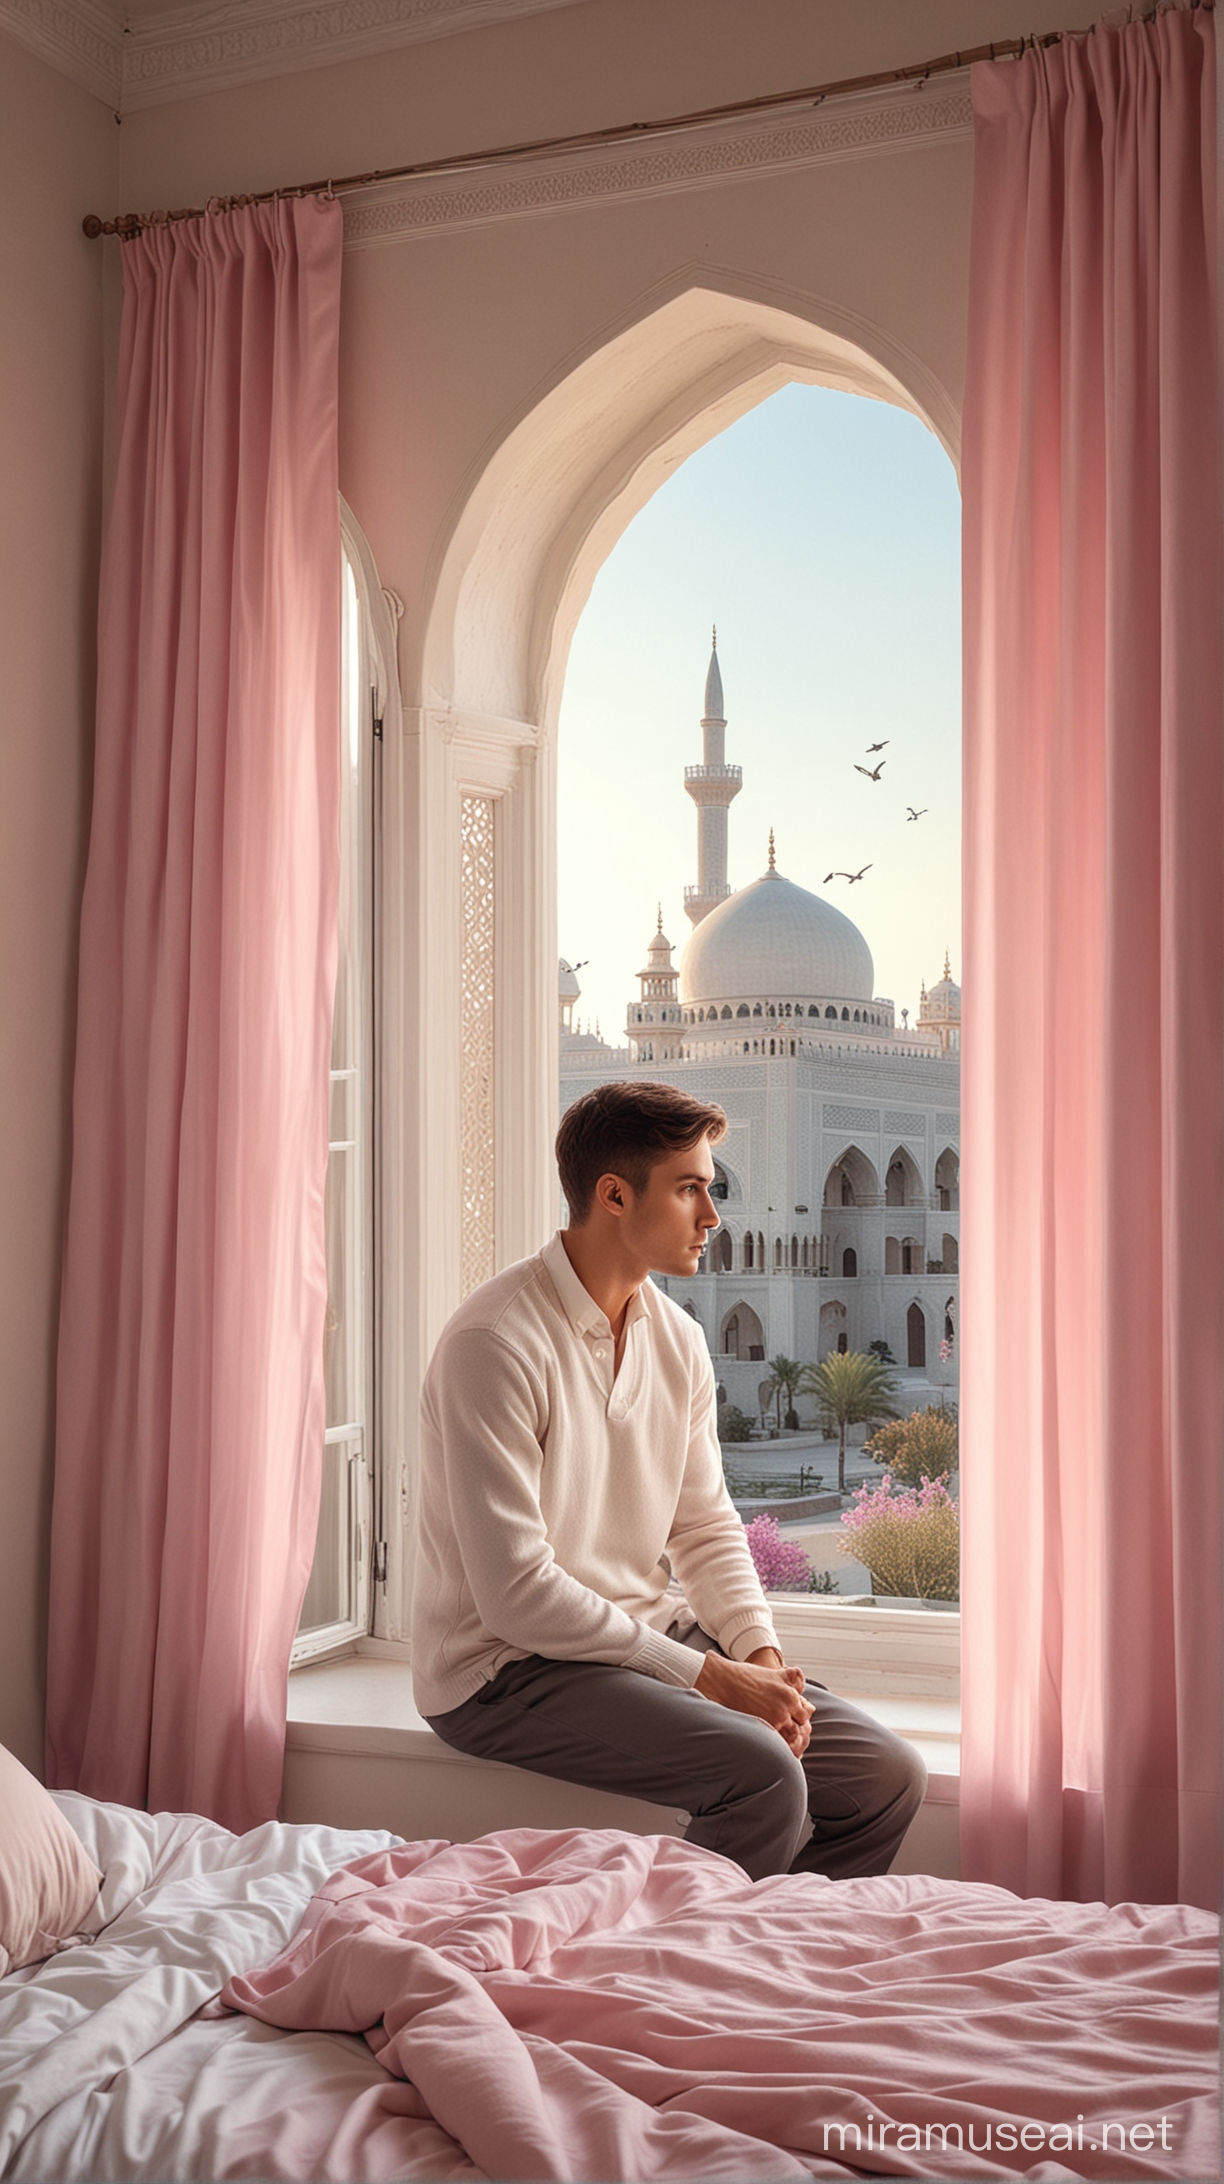 Serene Young Man by Bedroom Window Overlooking Mosque